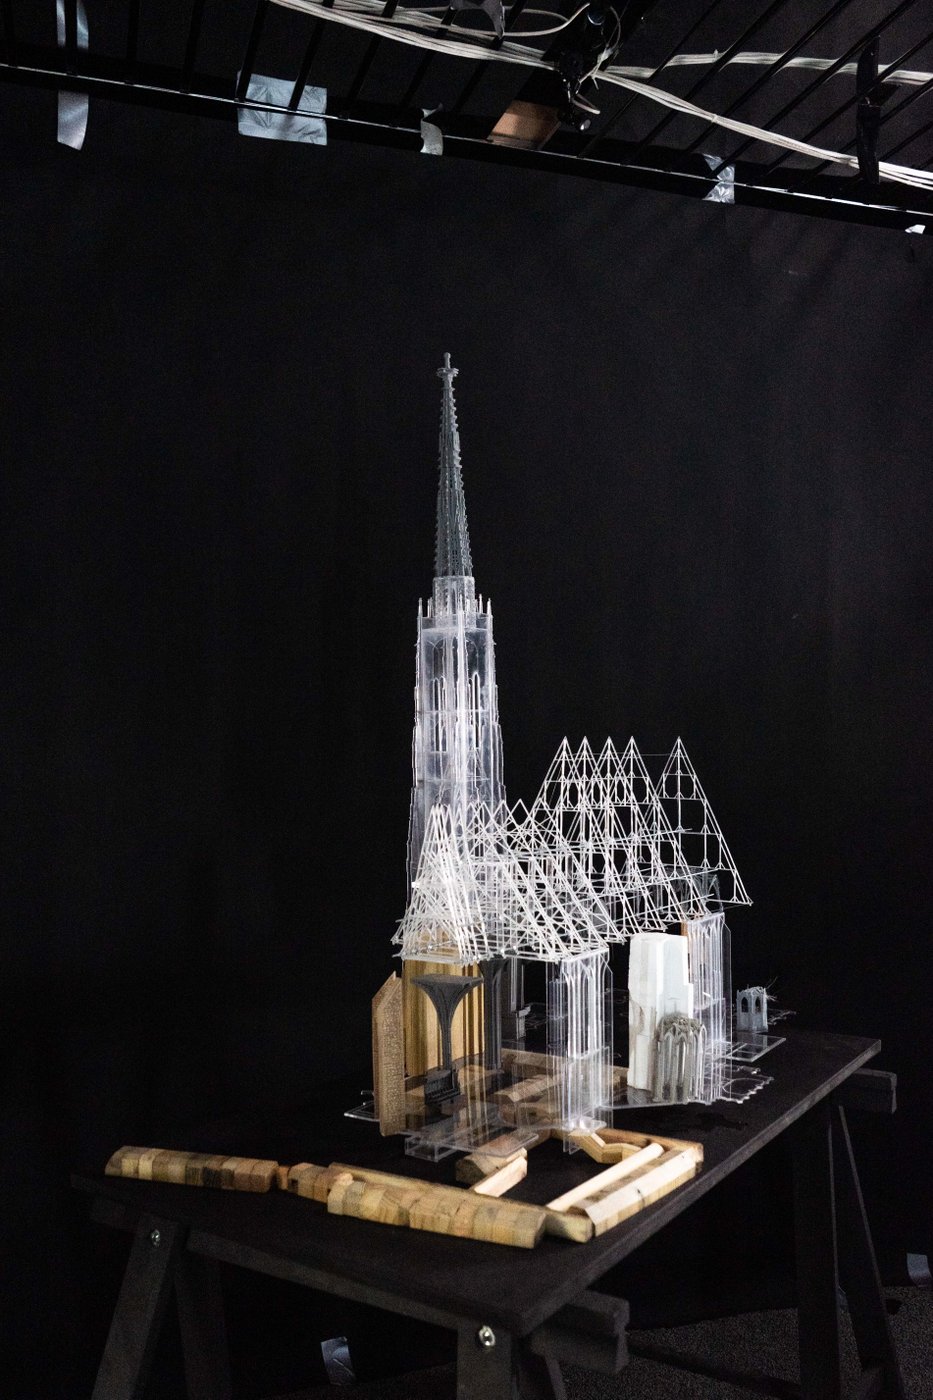 Ein Modell des Wiener Stephansdoms steht vor schwarzem Hintergrund auf einem schwarzen Tisch. Das Modell besteht aus transparenten und opaken Kunststoffelementen sowie aus hölzernen Umgebungsbauten.